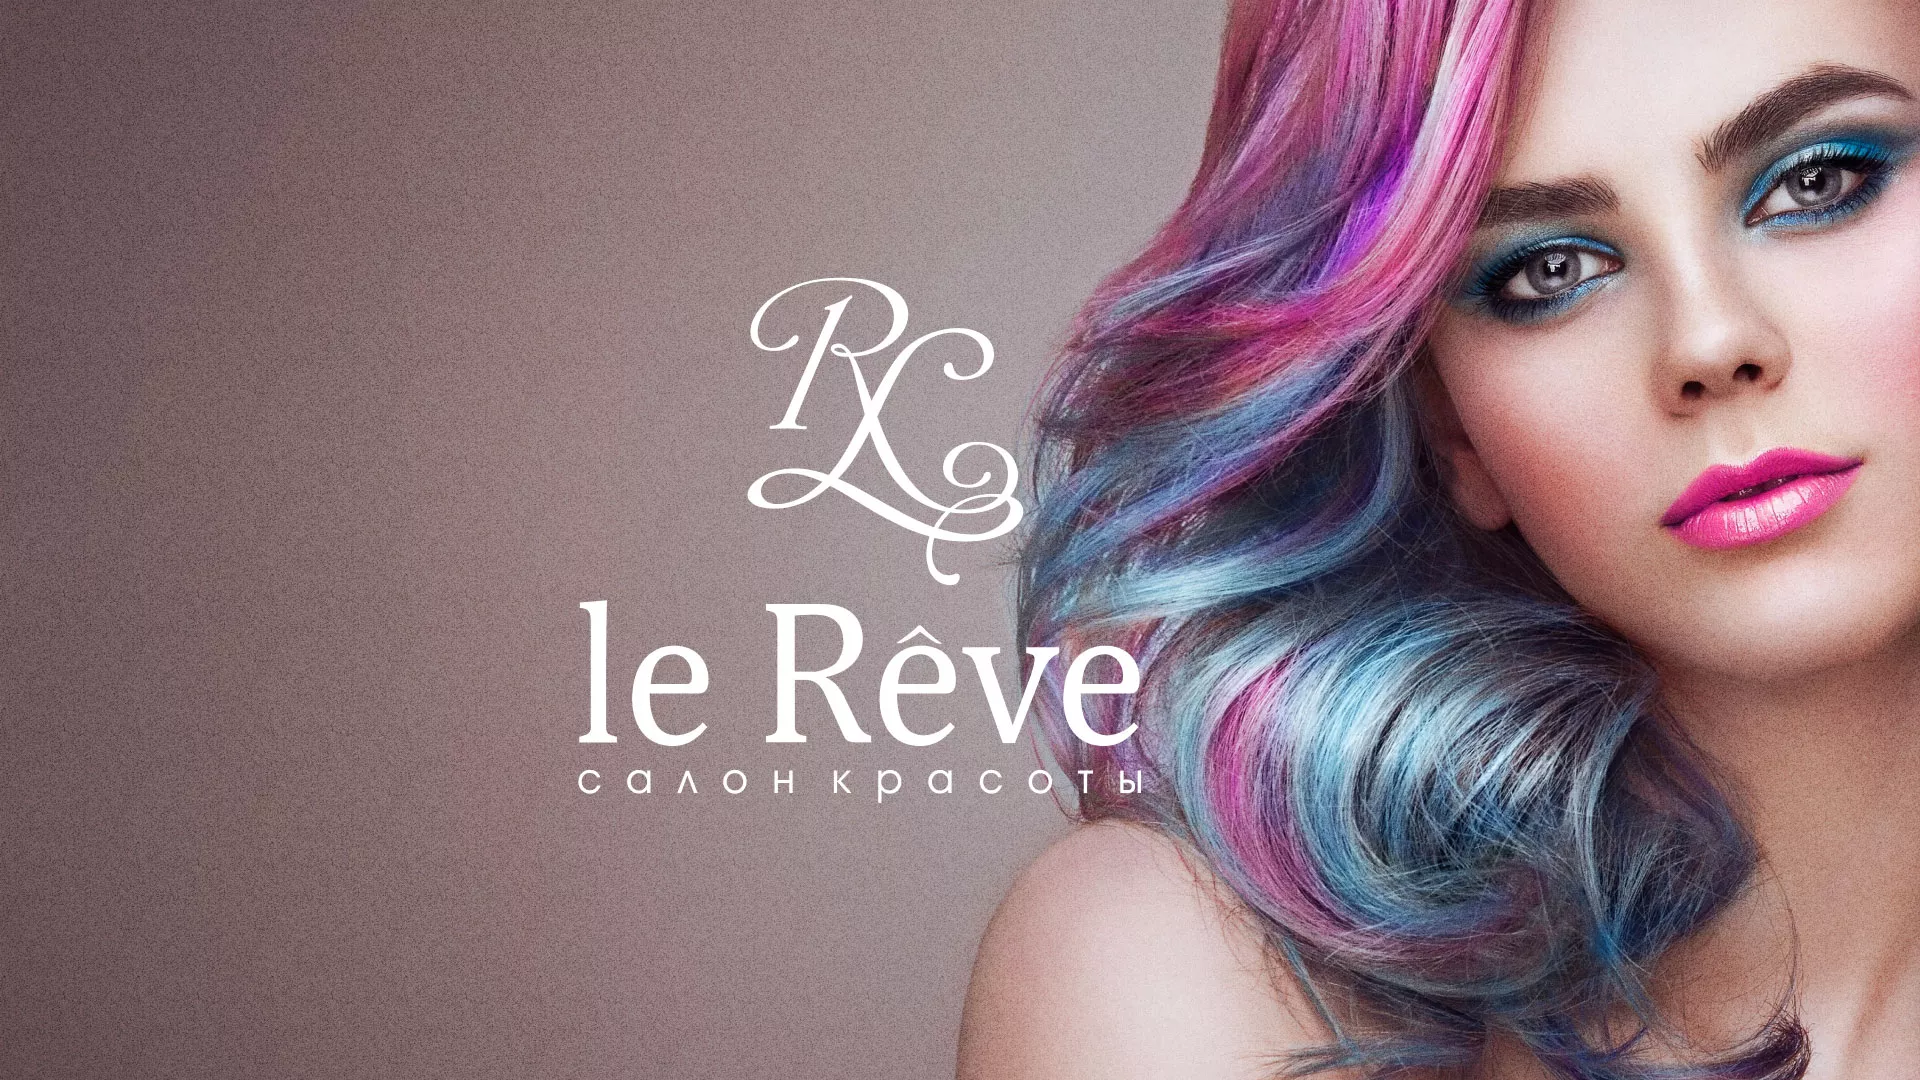 Создание сайта для салона красоты «Le Reve» в Талдоме